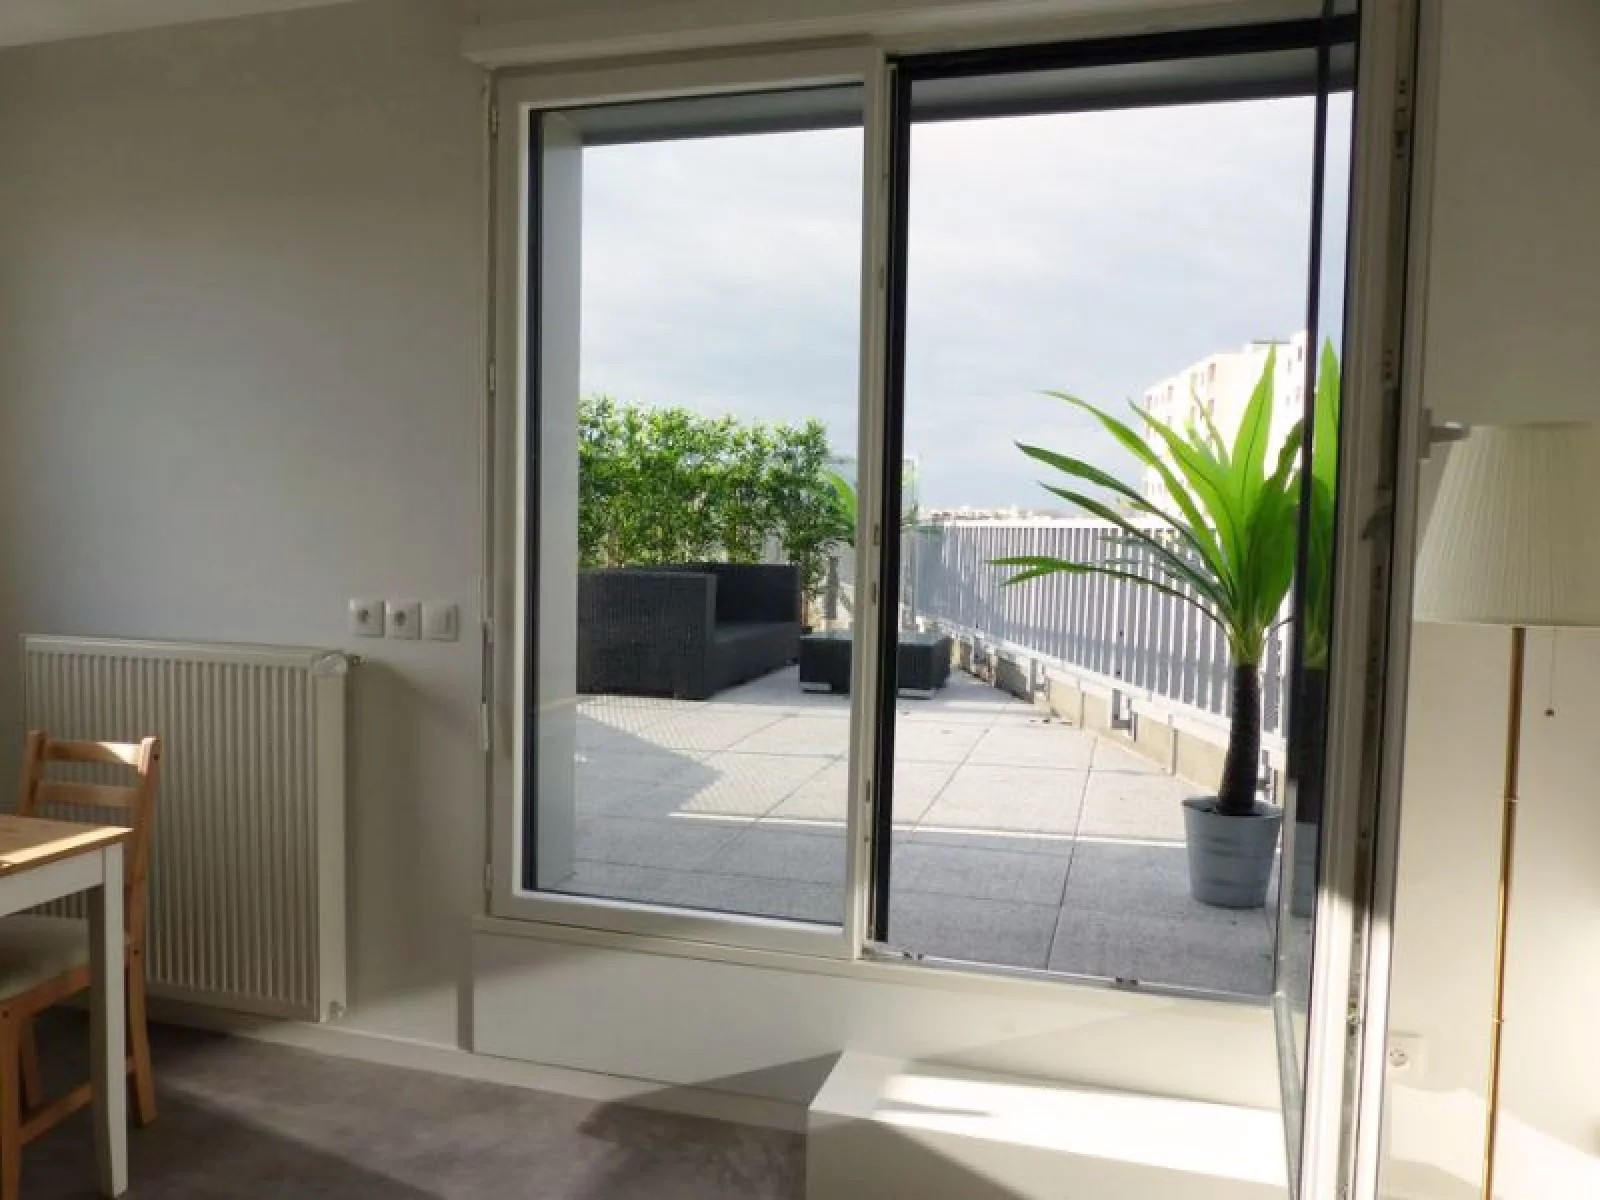 Location appartement meublé duplex 2 pièces 40m² (Bordeaux - St Augustin)